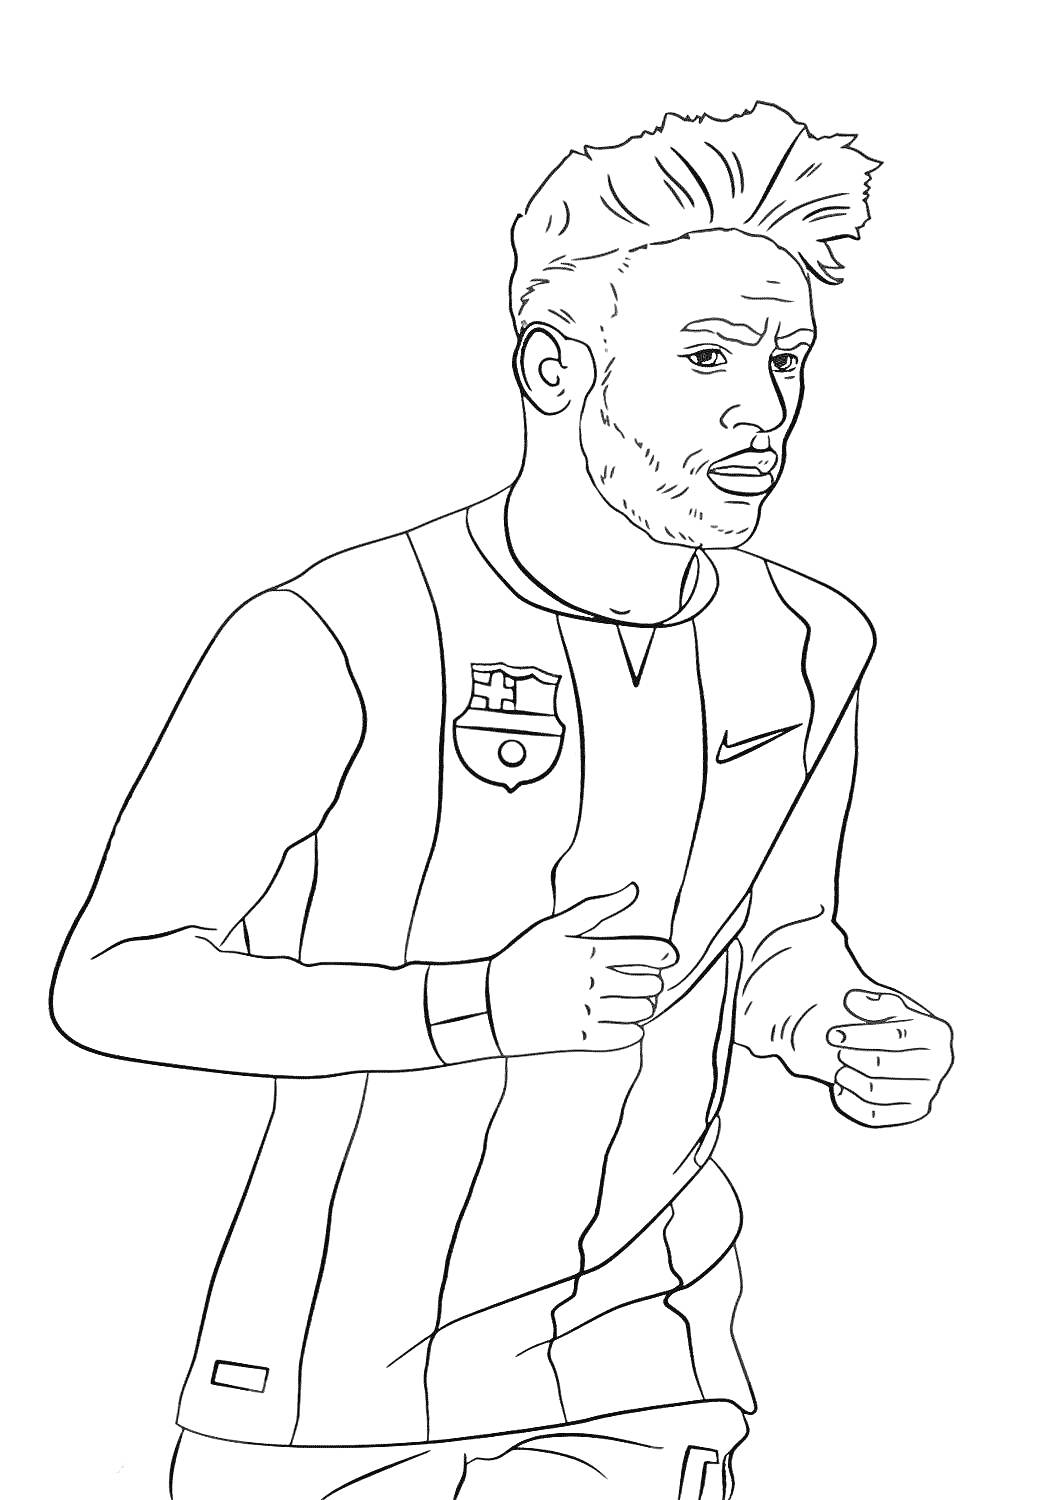 Раскраска Футболист в форме с эмблемой и логотипом на груди, бежит, короткие волосы